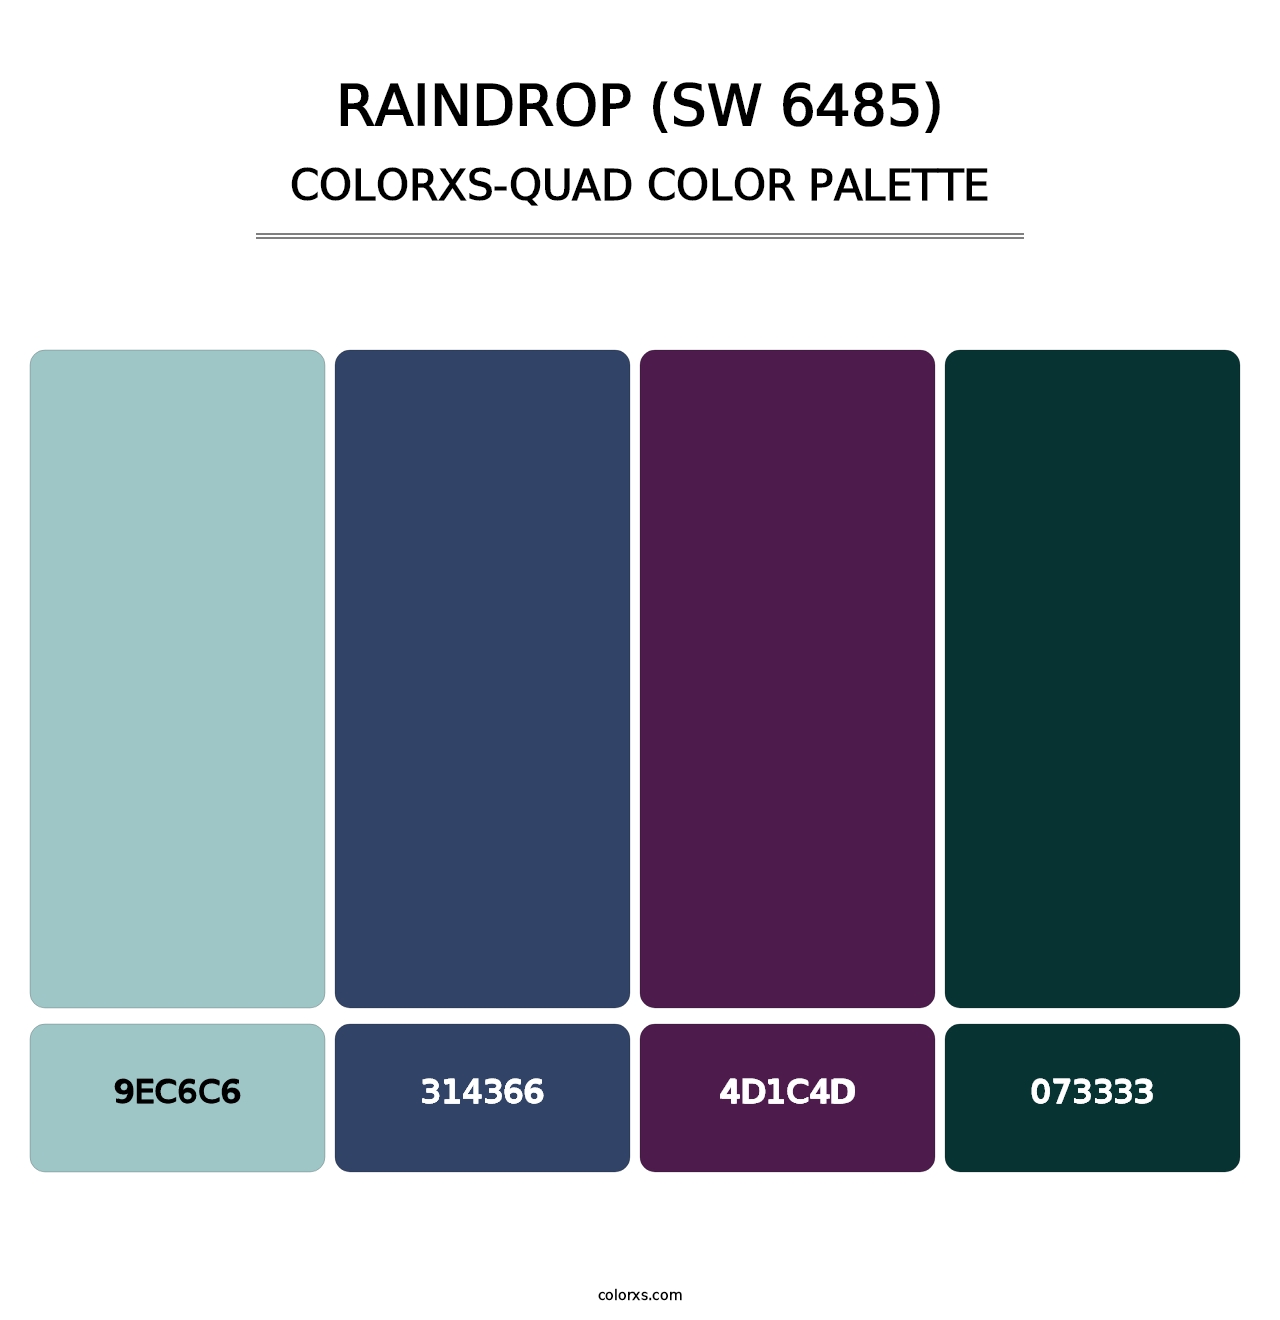 Raindrop (SW 6485) - Colorxs Quad Palette